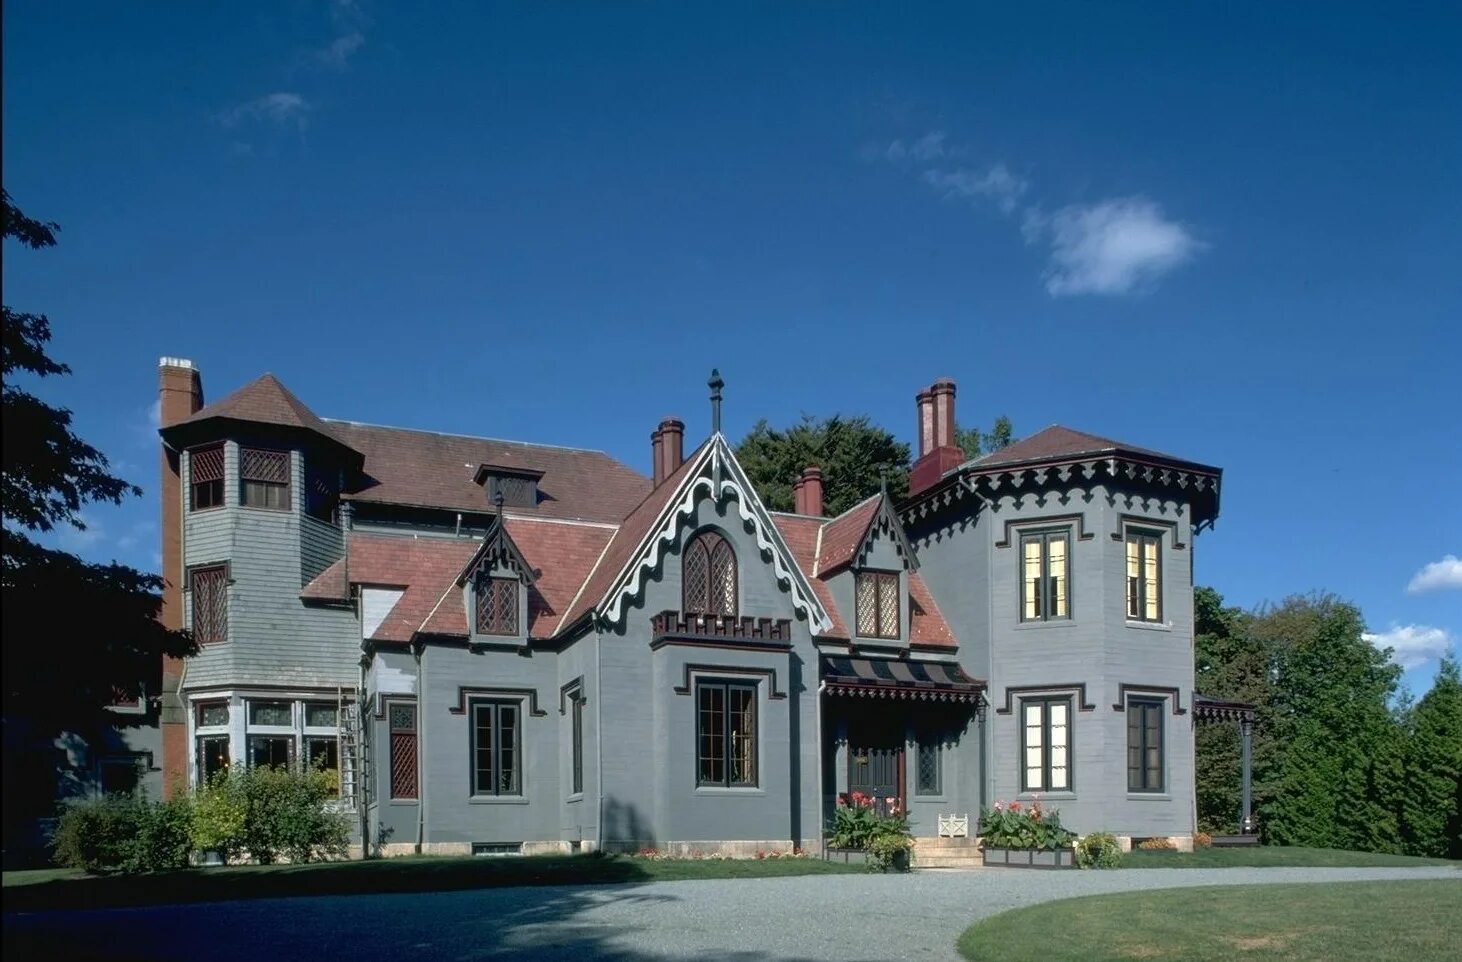 Архитектура американского пригорода. Красивые дома. Дом в нормандском стиле. Особняк в викторианском стиле США.